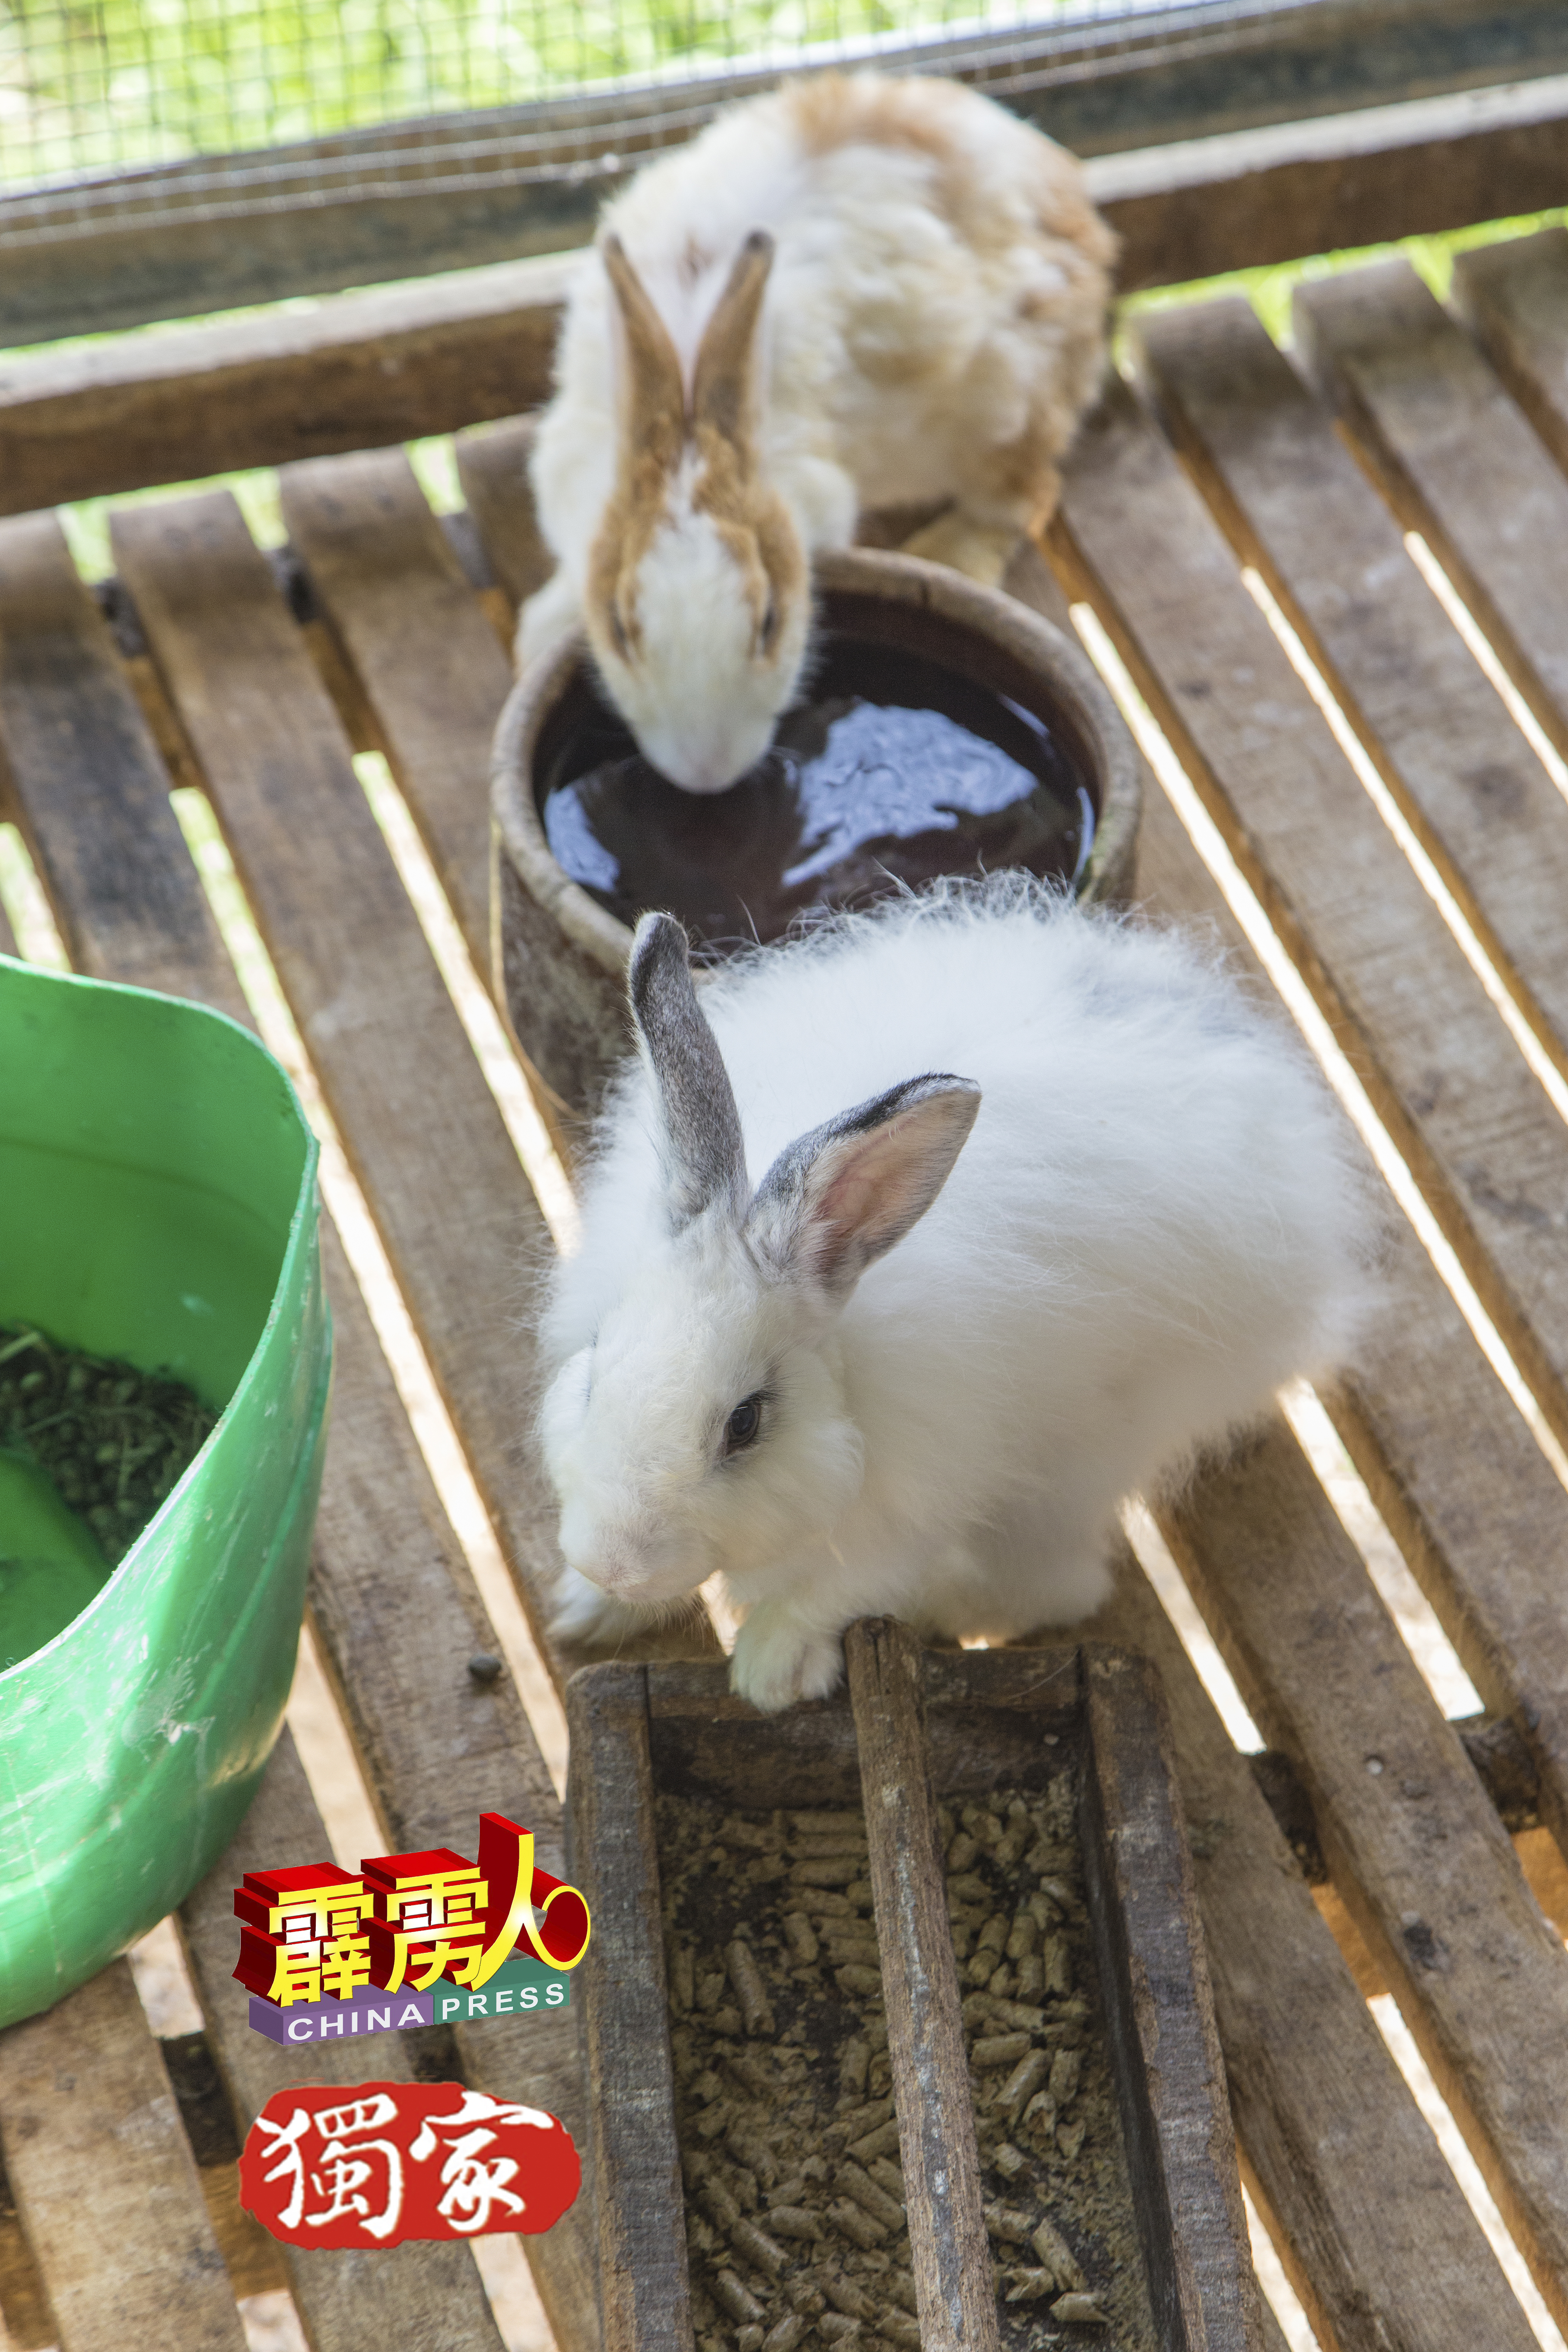 饲养兔子不麻烦也不会重本，只需要提供牠们饲料与食水即可，非常方便。